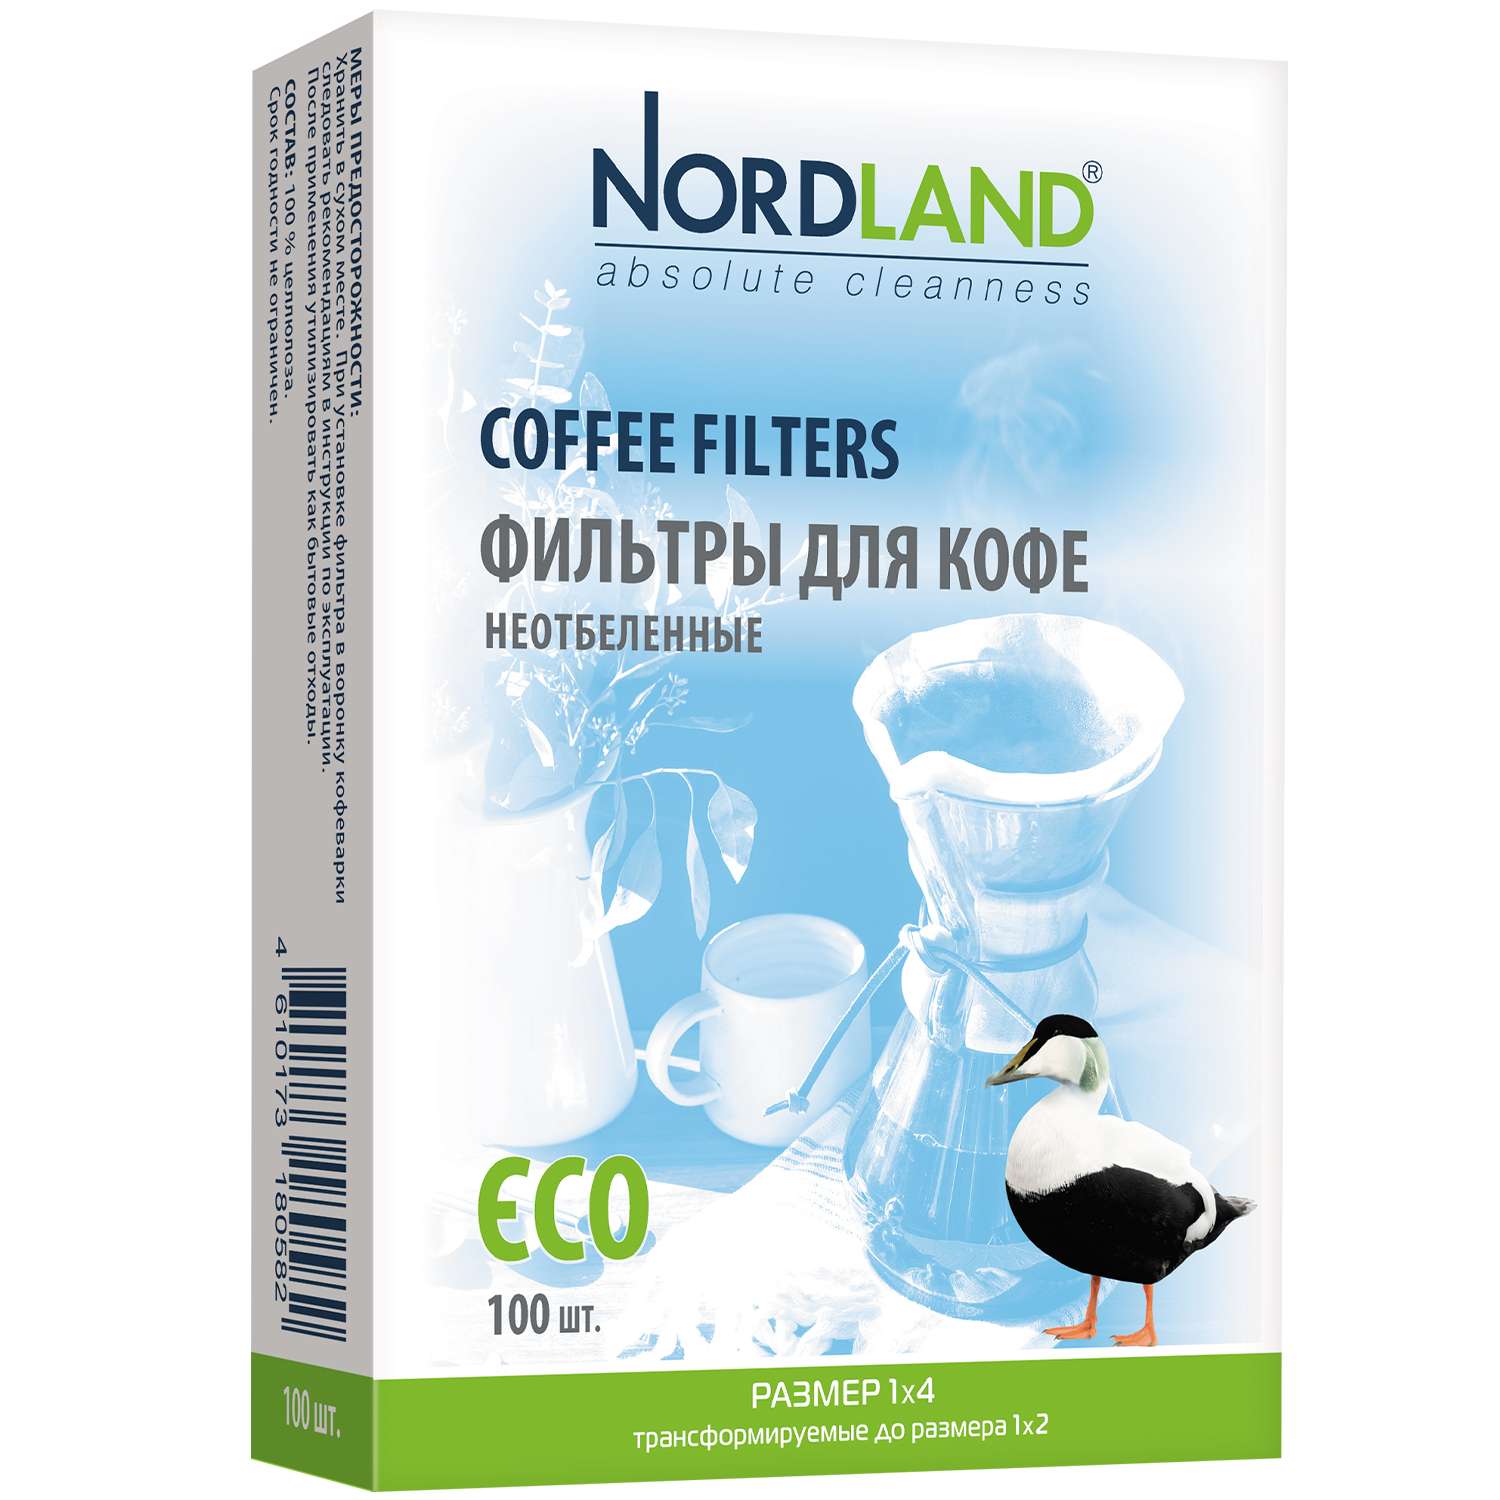 Фильтры Nordland для кофе неотбеленные размер 1х4. 100 шт. в коробке - фото 2